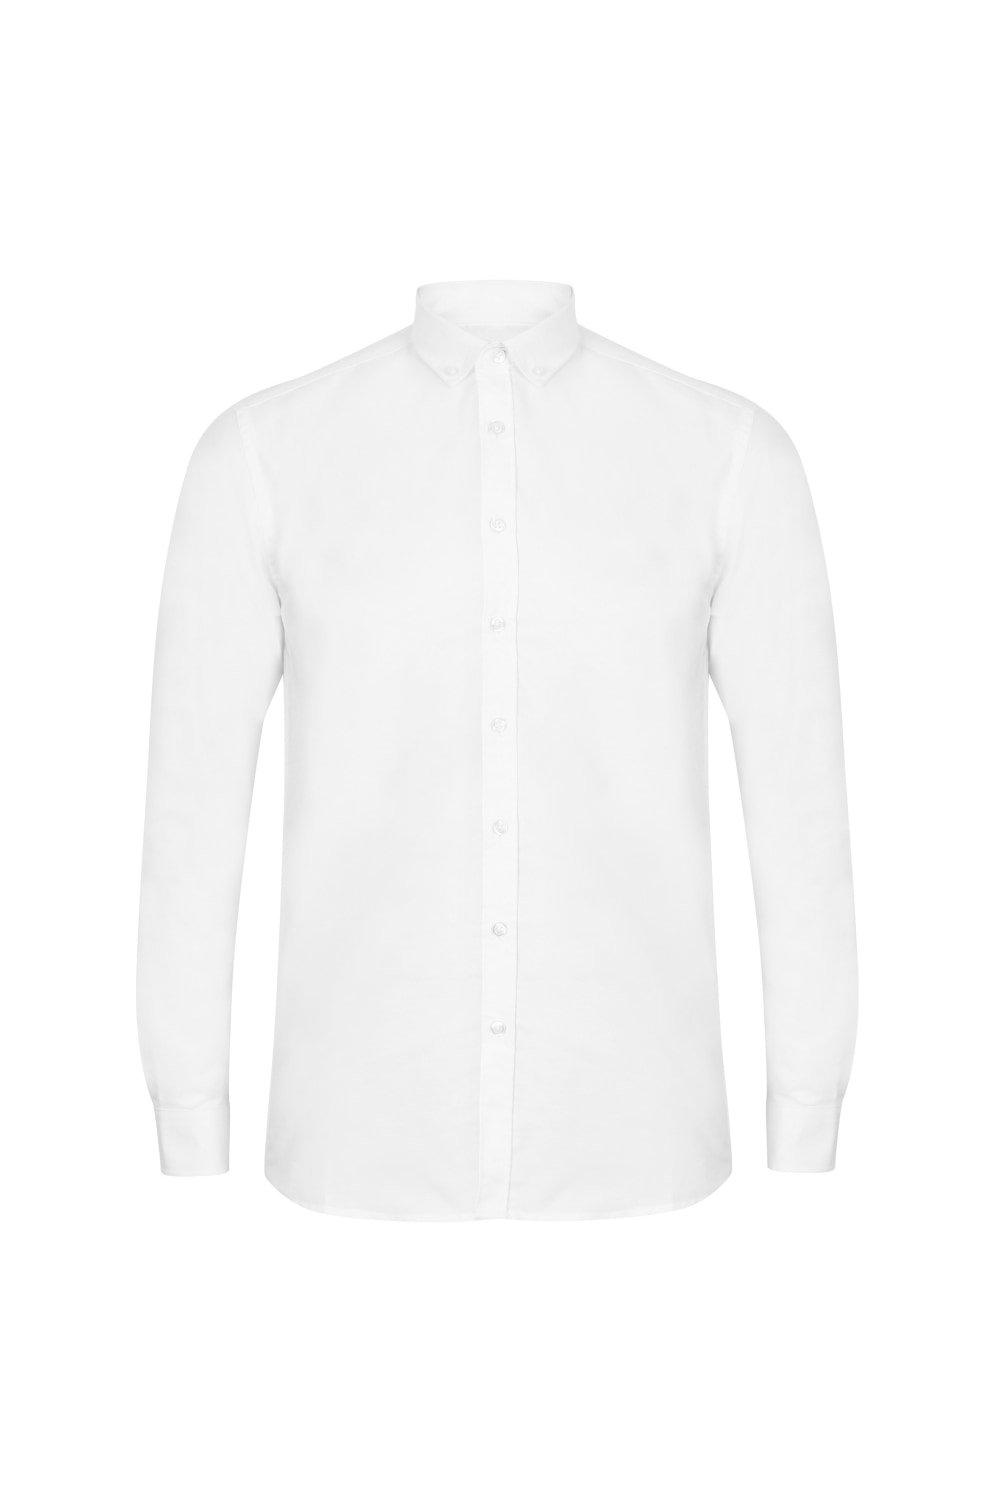 Современная оксфордская рубашка с длинными рукавами Henbury, белый кофта на пуговицах 44 размер